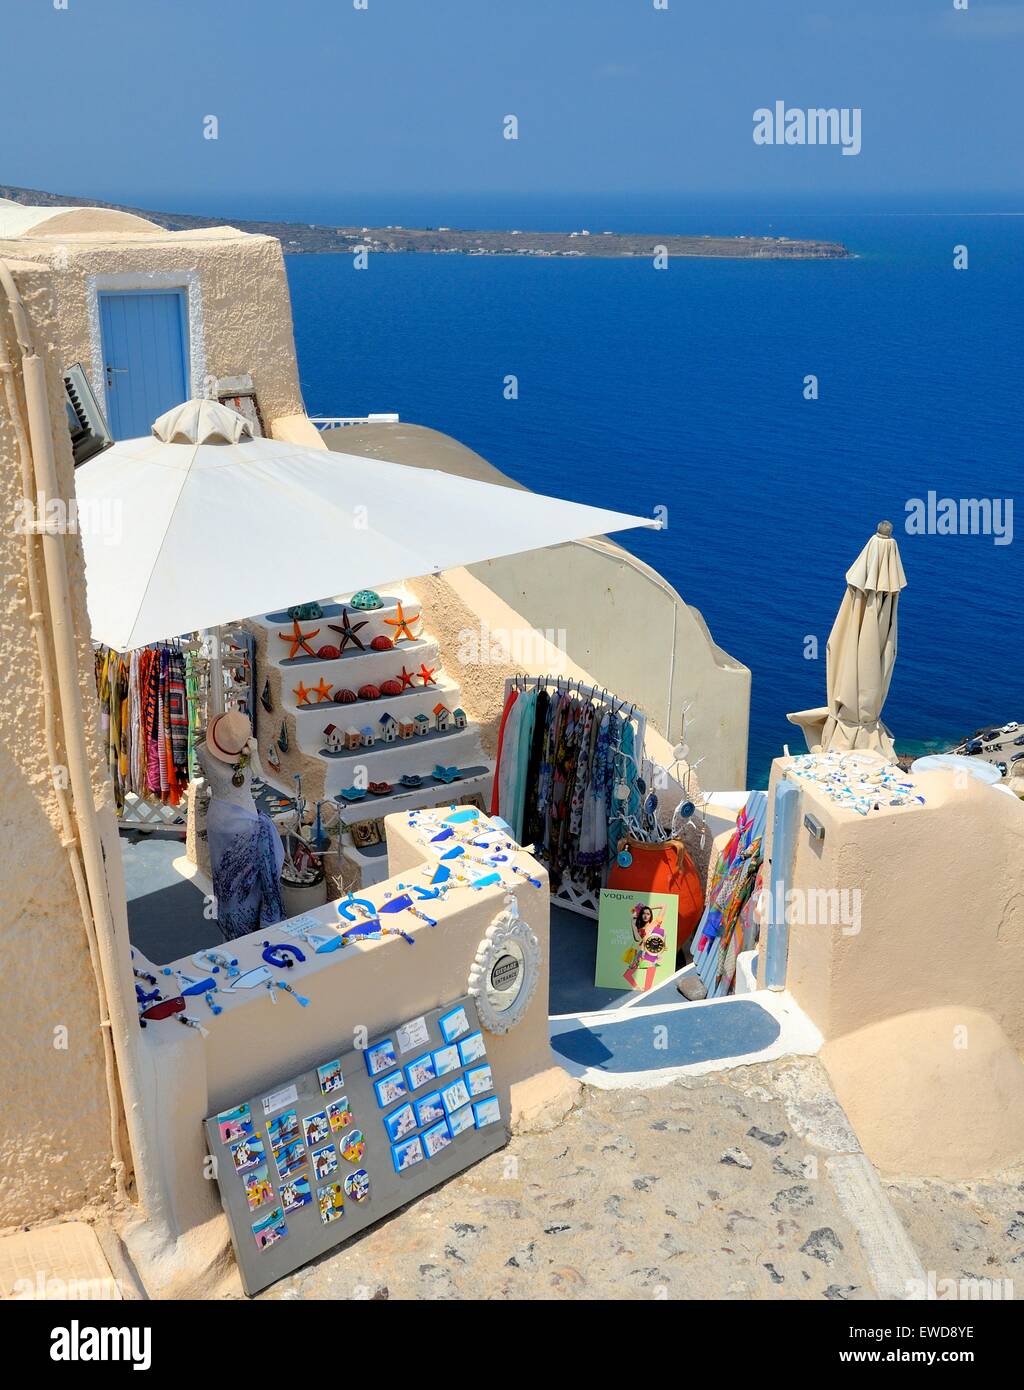 A souvenir gift shop in the village of Oia Santorini Greece Stock Photo